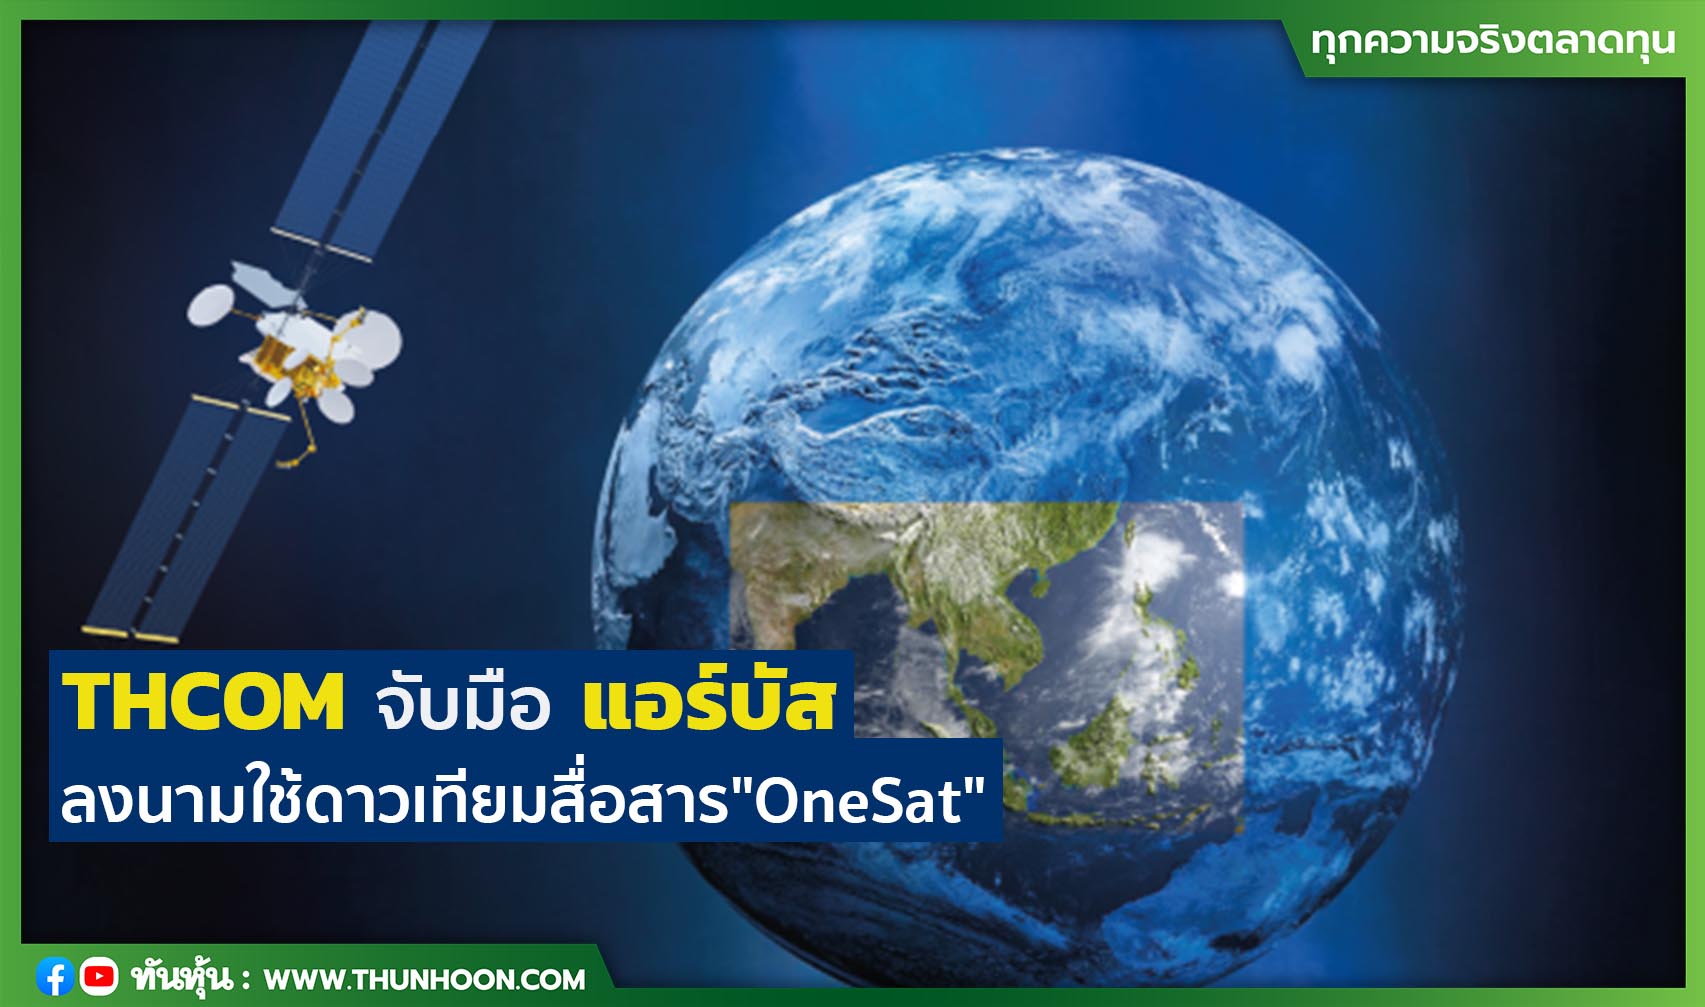 THCOM จับมือแอร์บัส ลงนามใช้ดาวเทียมสื่อสาร"OneSat" 